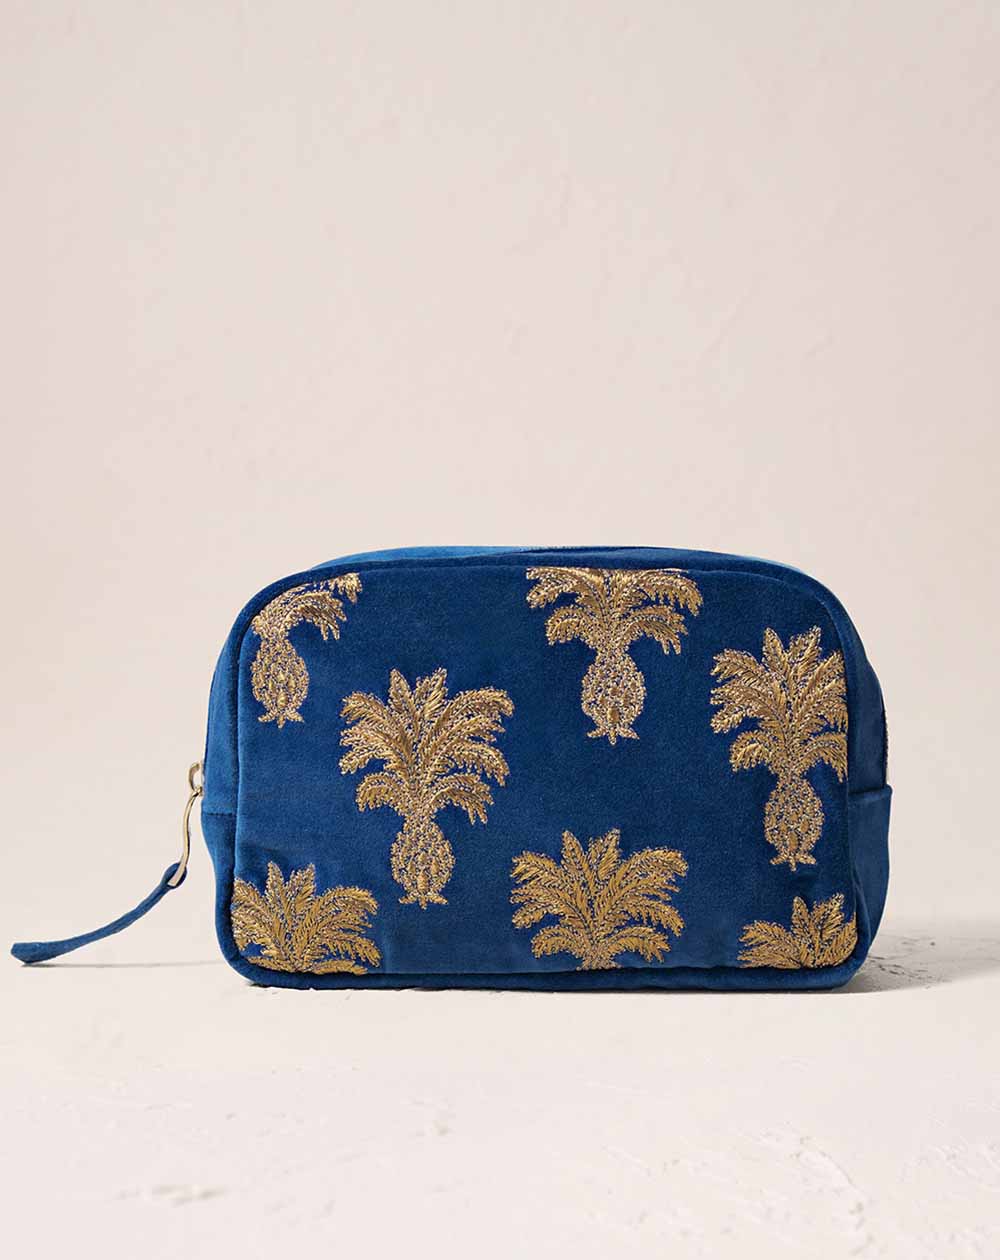 Elizabeth Scarlett - Cosmetics Bag - Pineapple (Cobalt velvet)